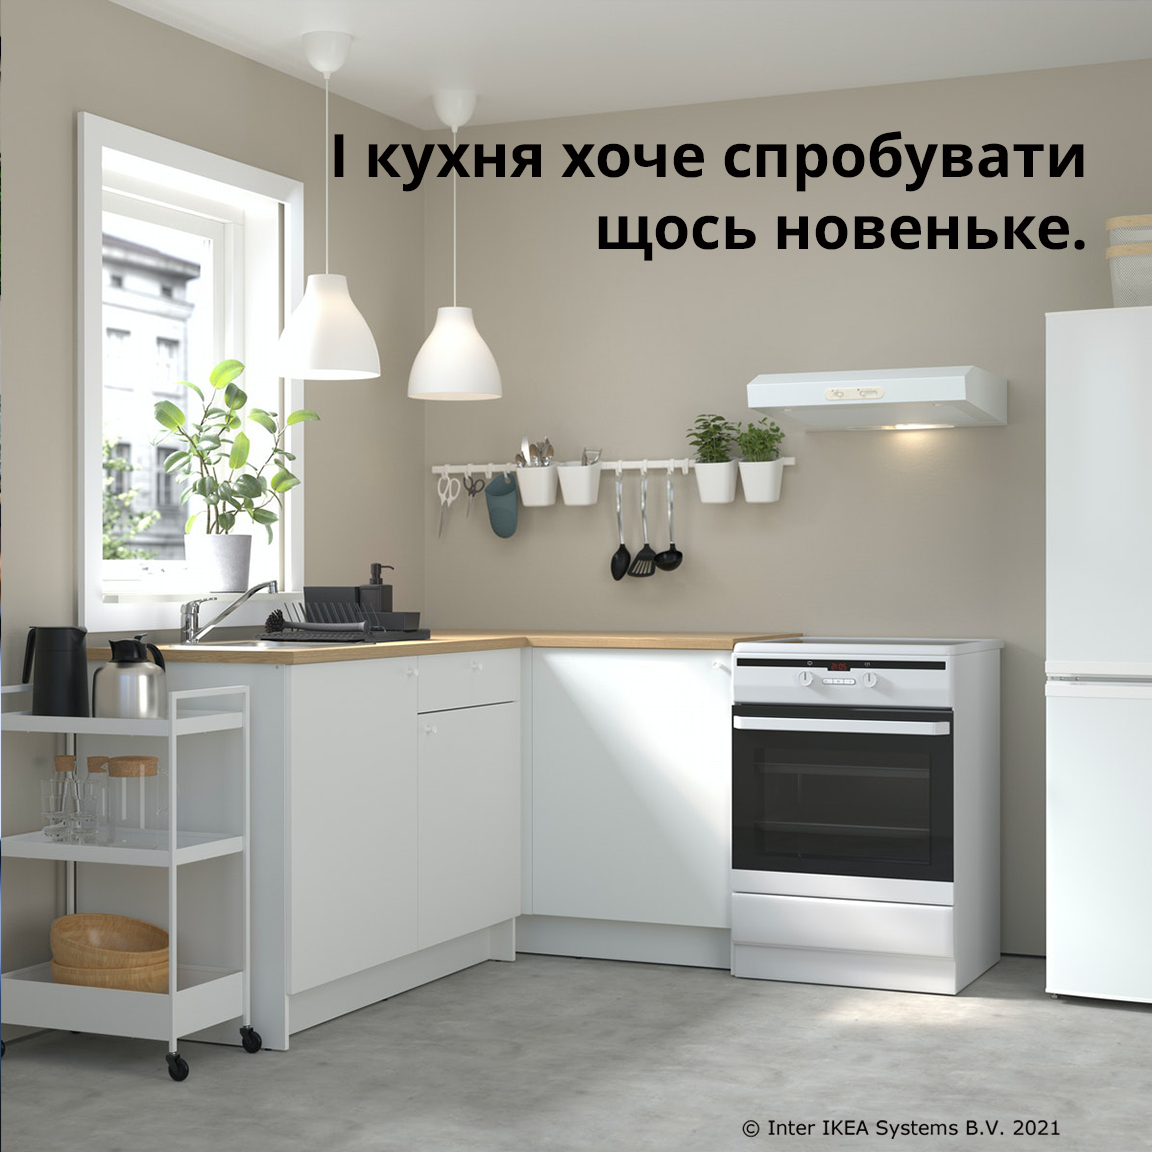  Facebook/ IKEA Ukraine